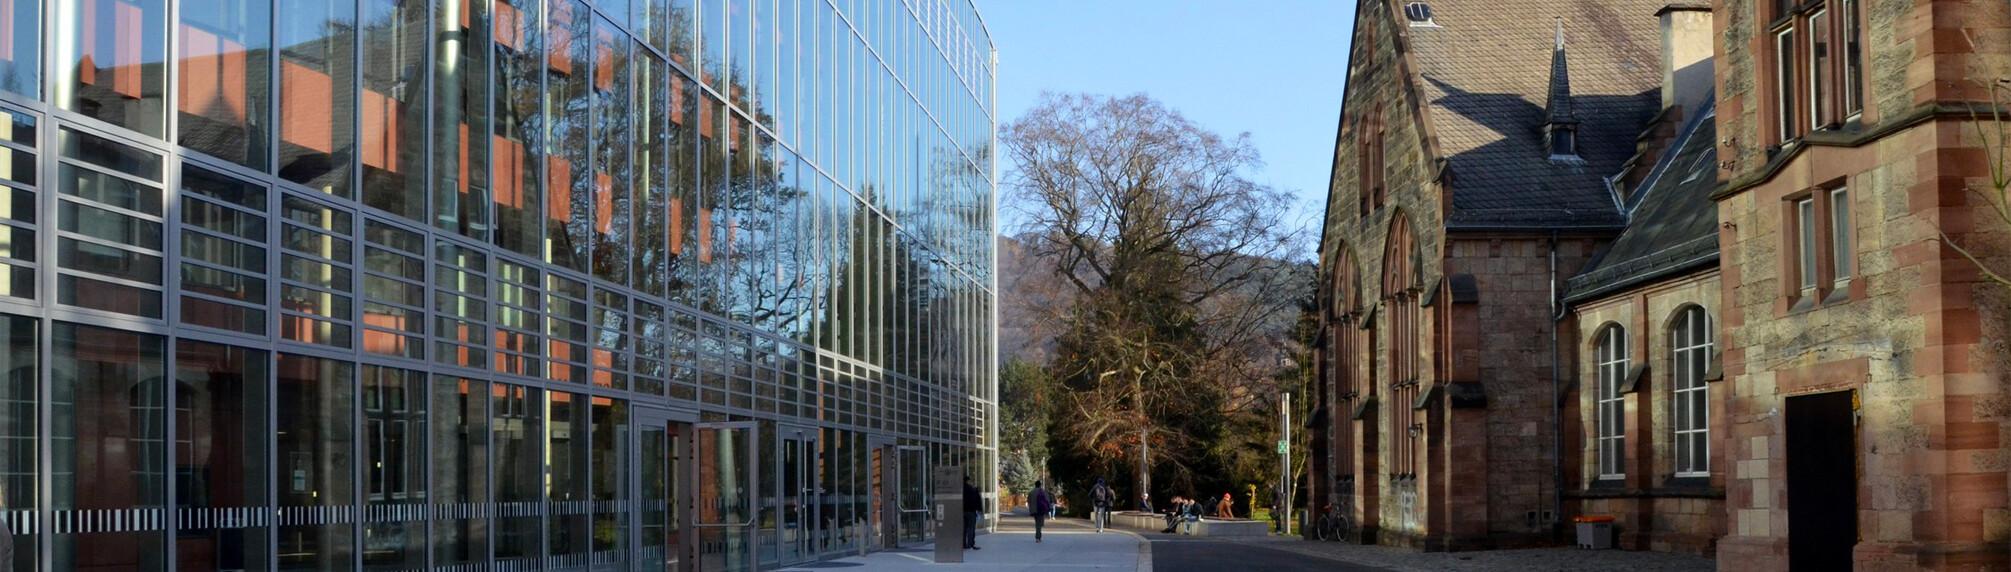 Bibliothek und Schäfer-Bau, Foto: Uni Marburg/Gabriele Neumann